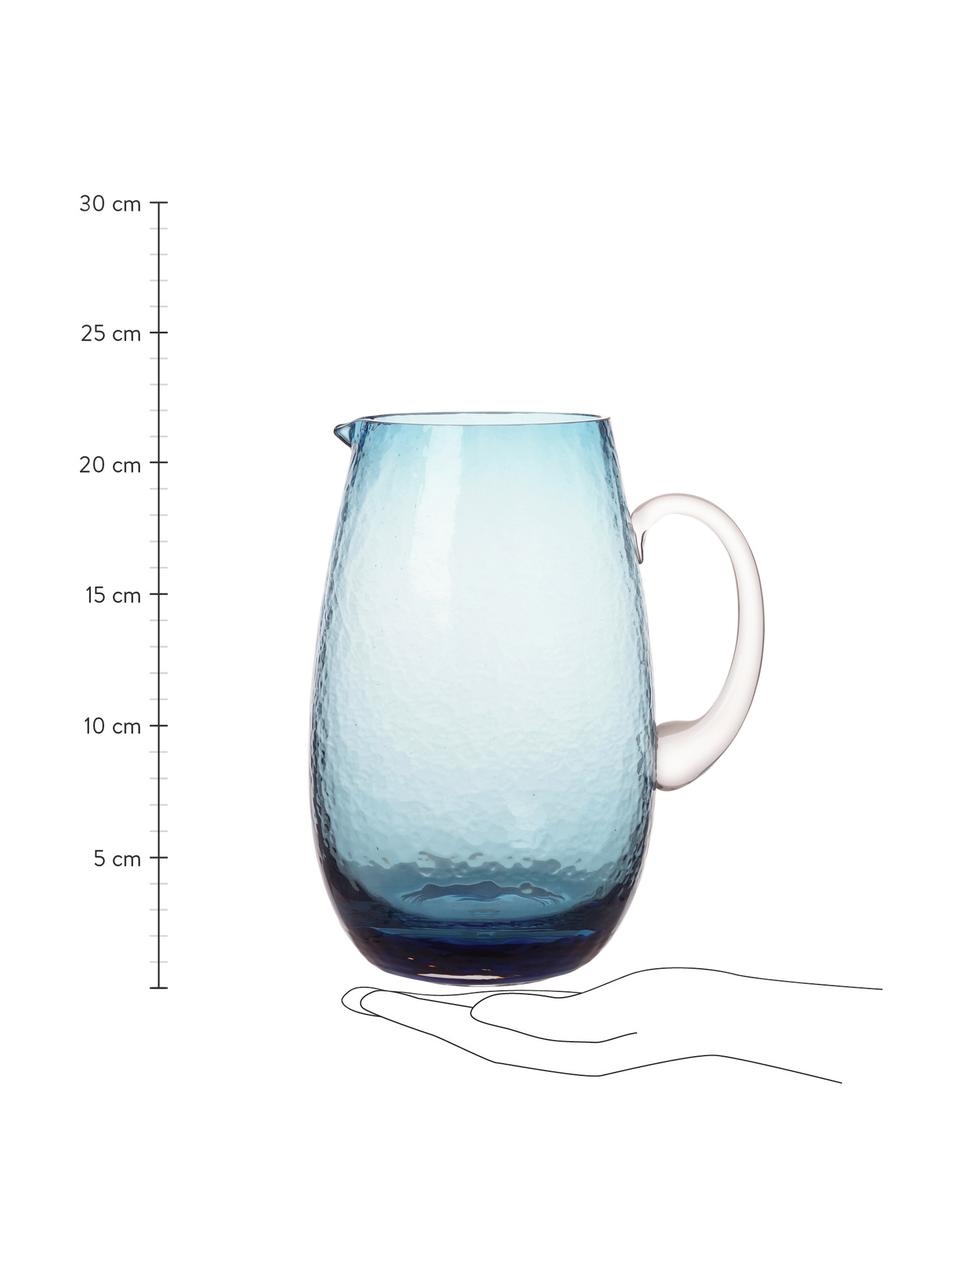 Großer mundgeblasener Krug Hammered mit gehämmerter Oberfläche, 2 L, Glas, mundgeblasen, Blau, transparent, Ø 14 x H 22 cm, 2 L